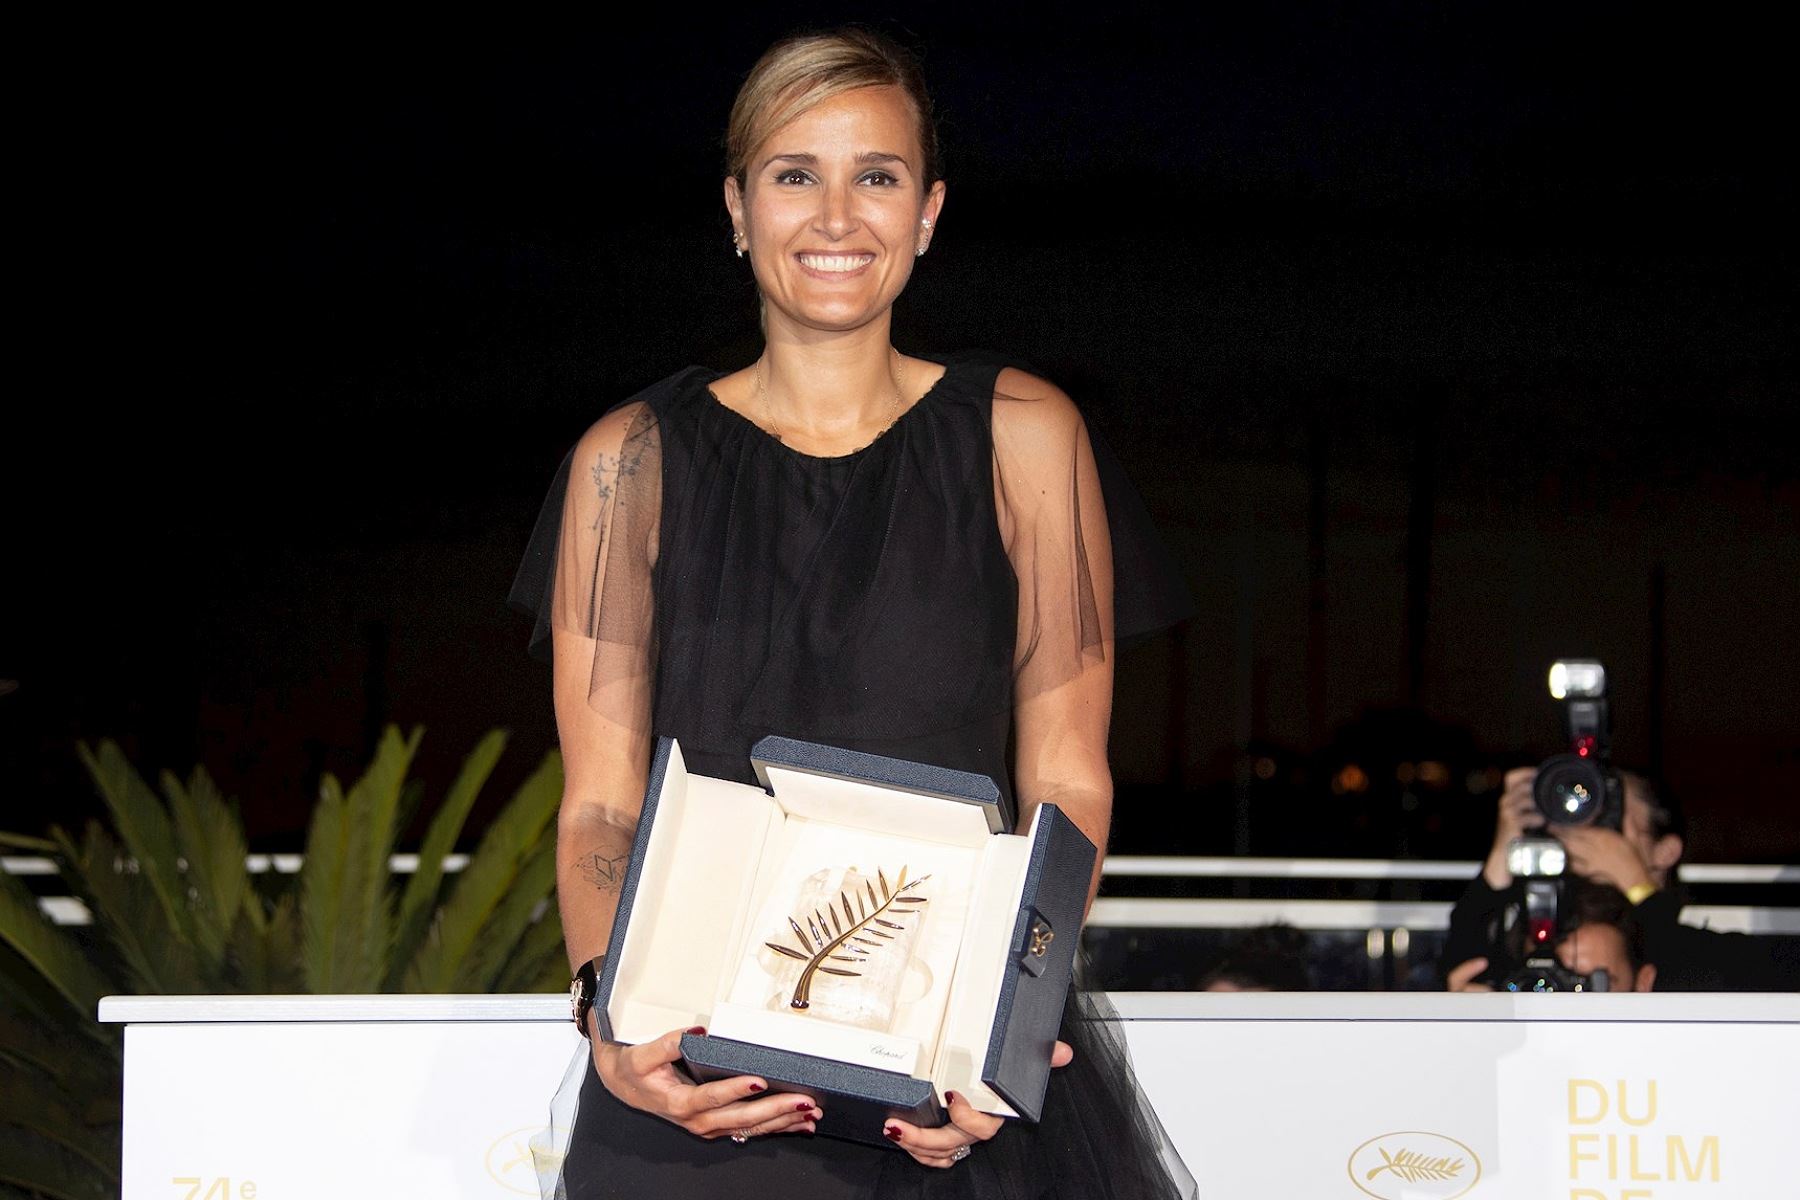 Directora Julia Ducournau, ganadora de la Palma de Oro en la 74° Festival de Cannes